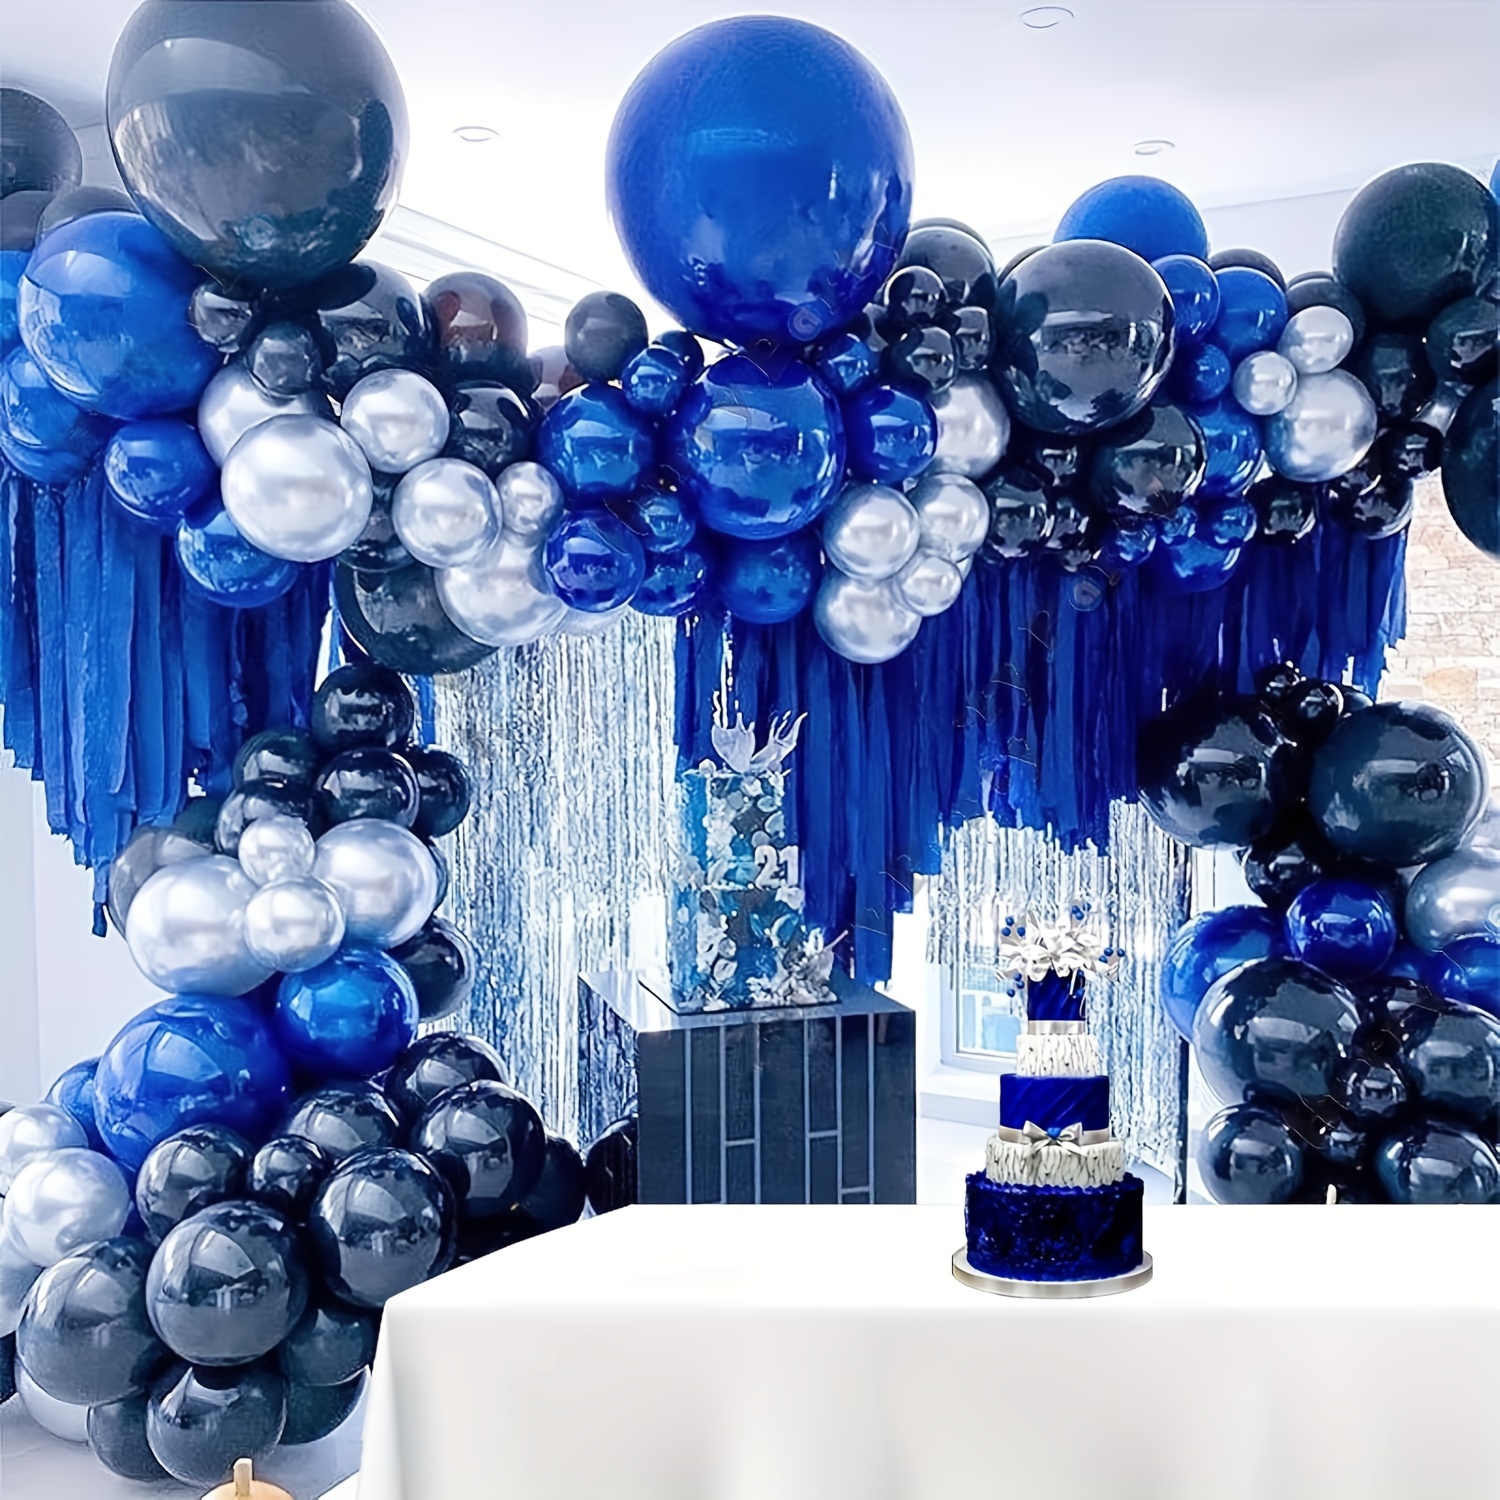 Decoraciones de fiesta de cumpleaños número 18, globos de feliz cumpleaños  18, decoraciones de cumpleaños azul marino para niños y hombres